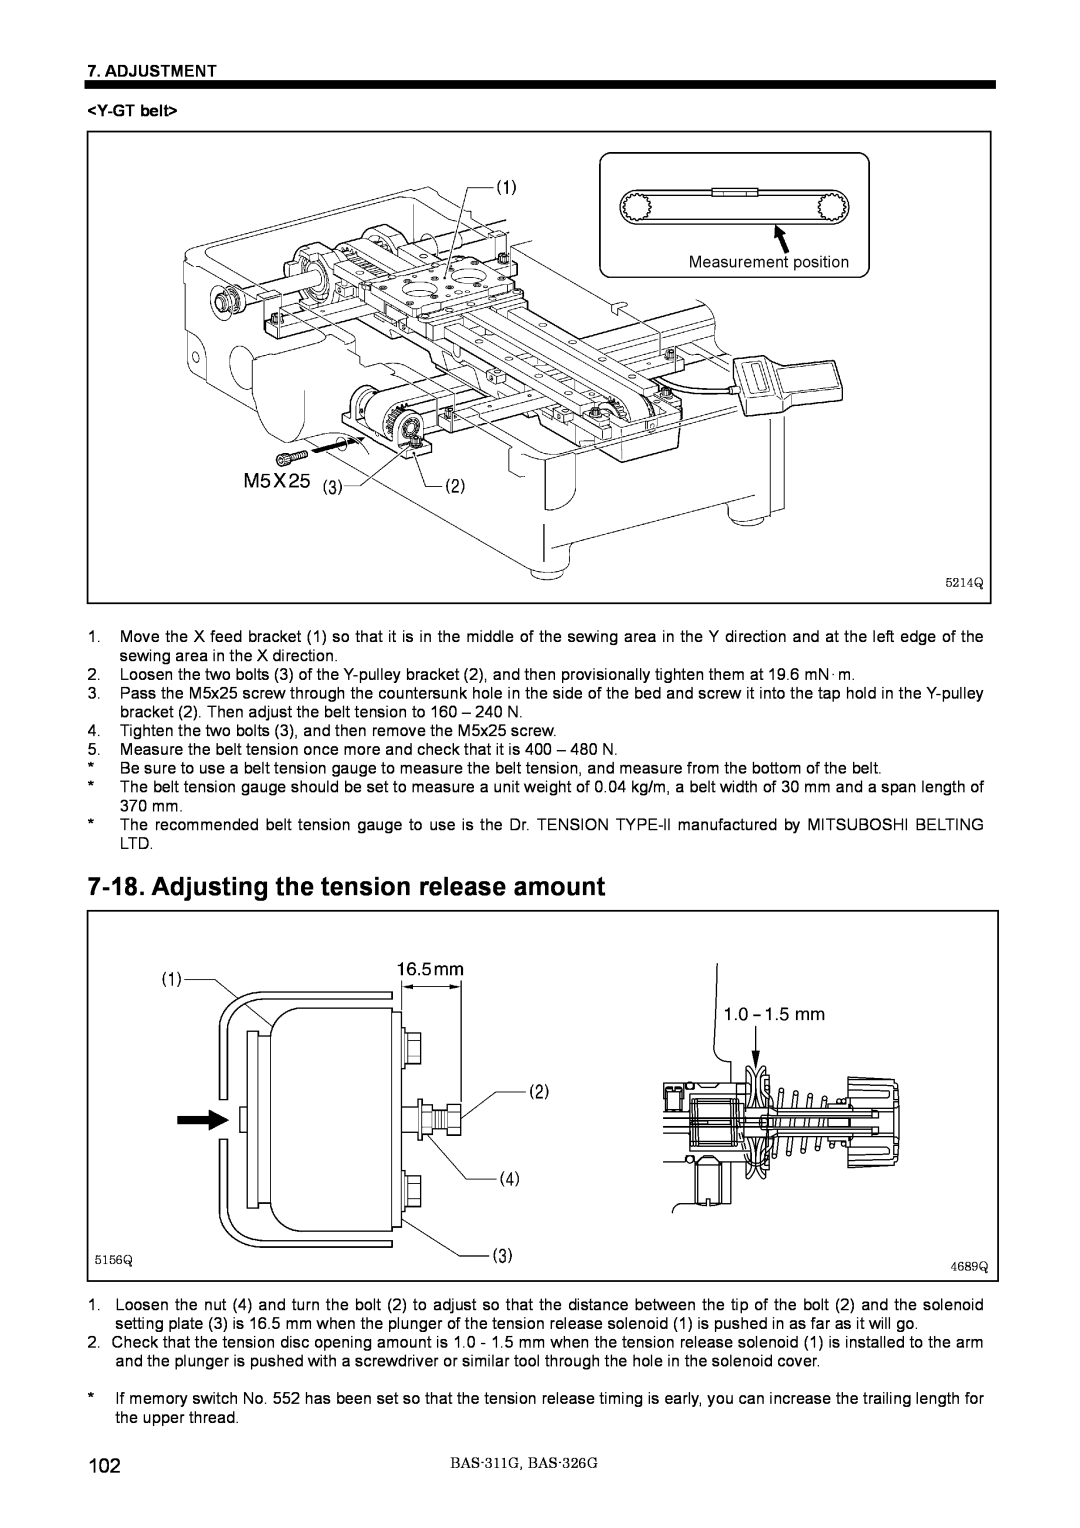 Brother BAS-311G service manual Adjusting the tension release amount, ADJUSTMENT Y-GT belt 